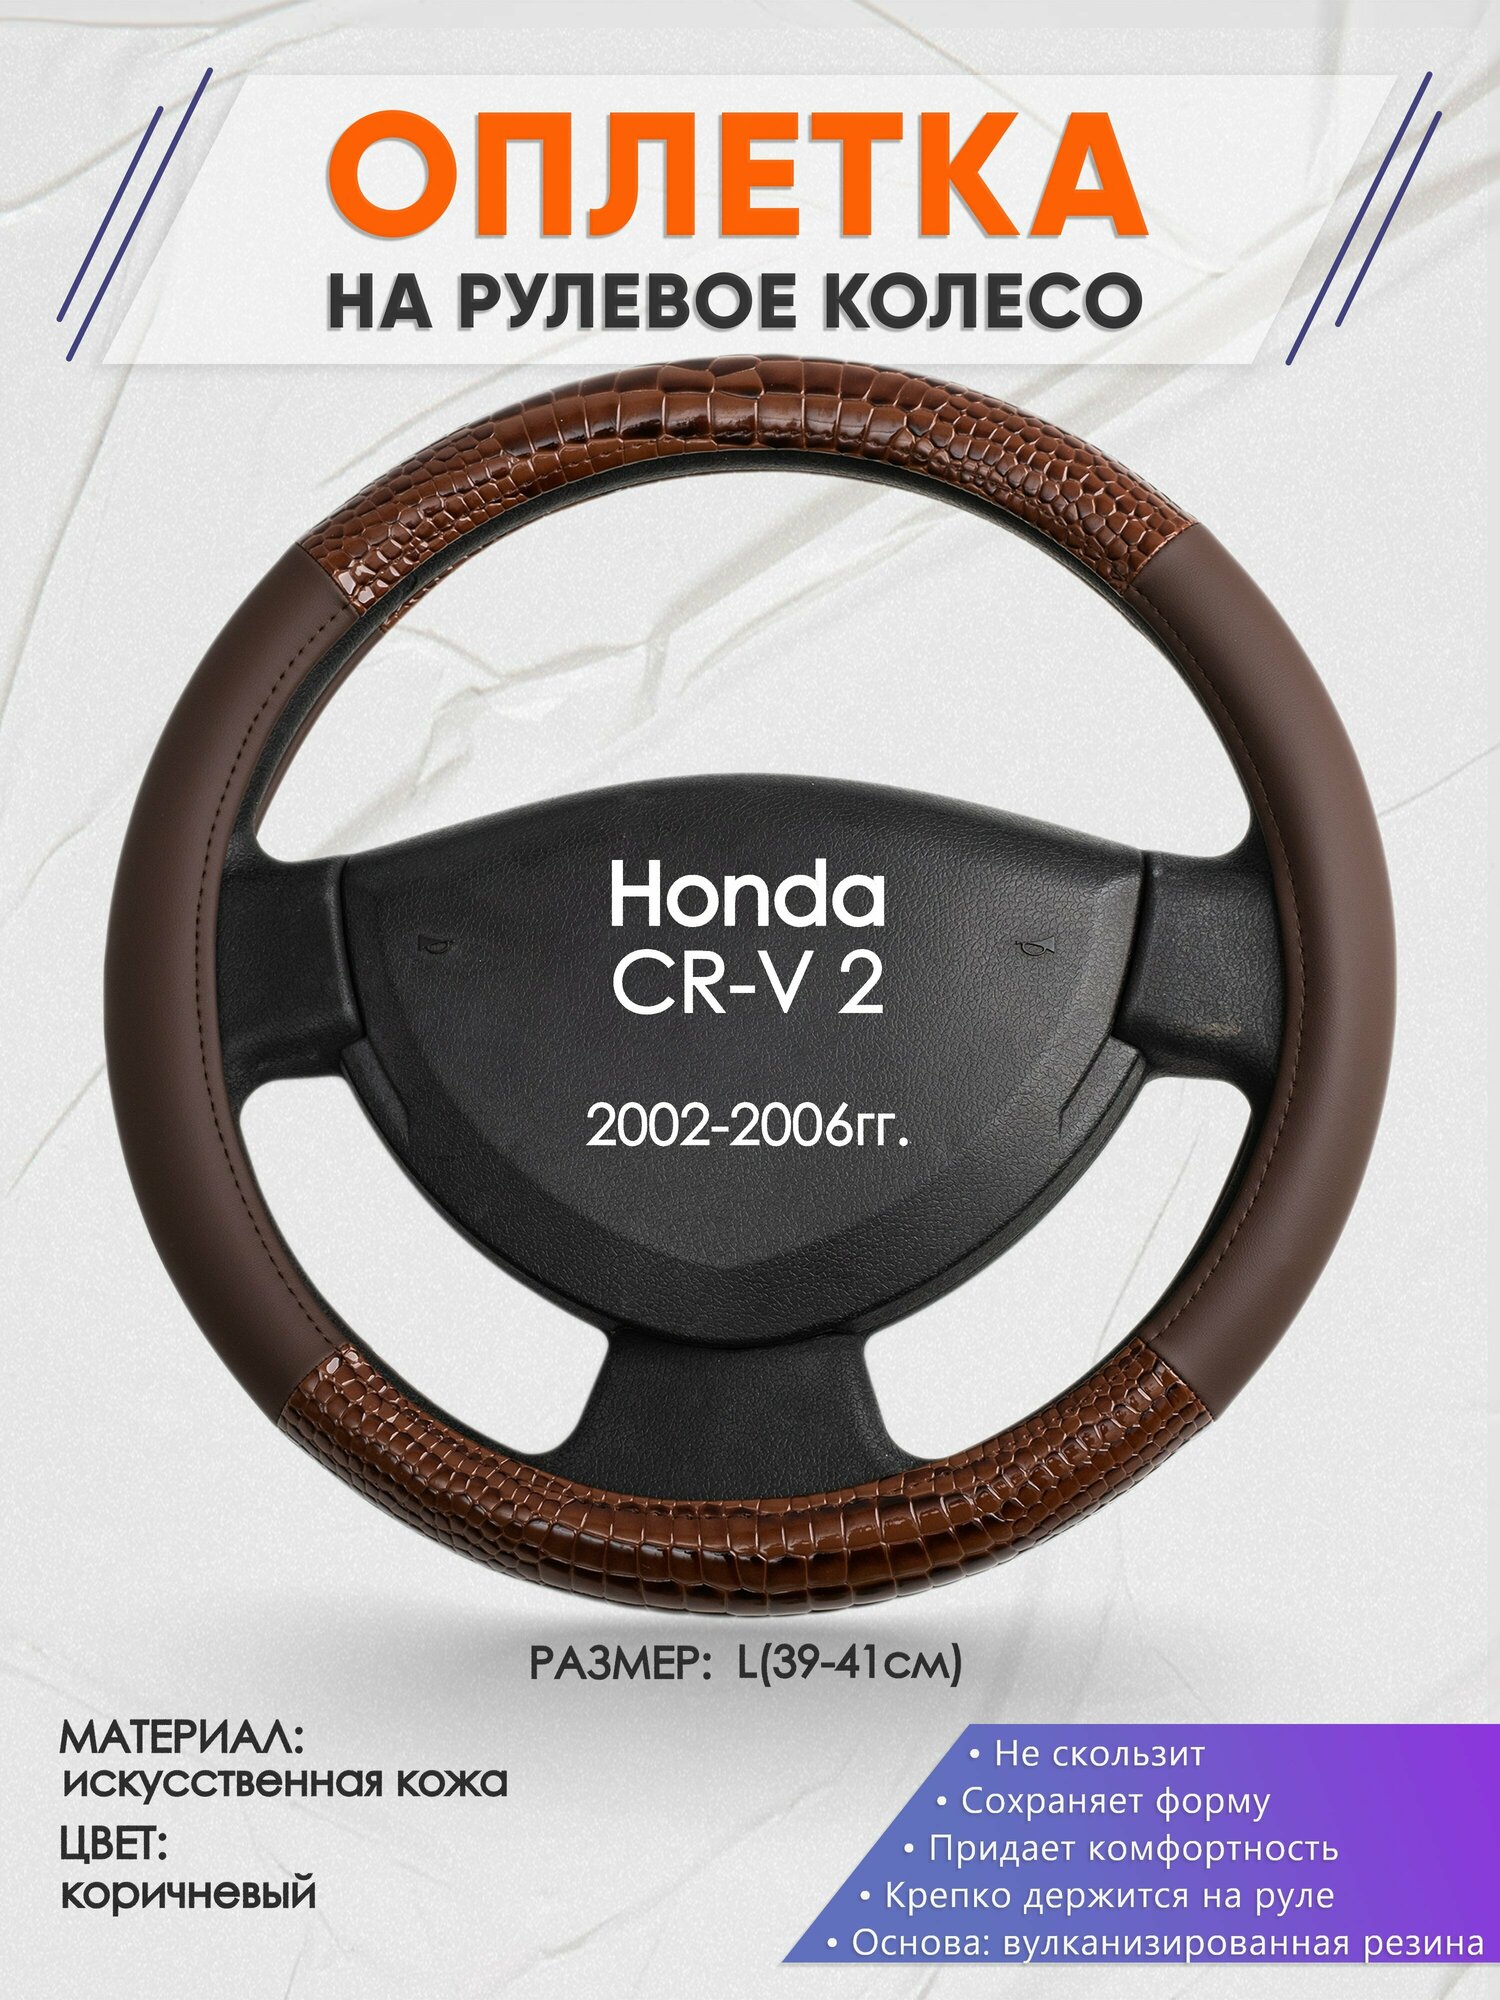 Оплетка на руль для Honda CR-V 2(Хонда срв 2) 2002-2006, L(39-41см), Искусственная кожа 85